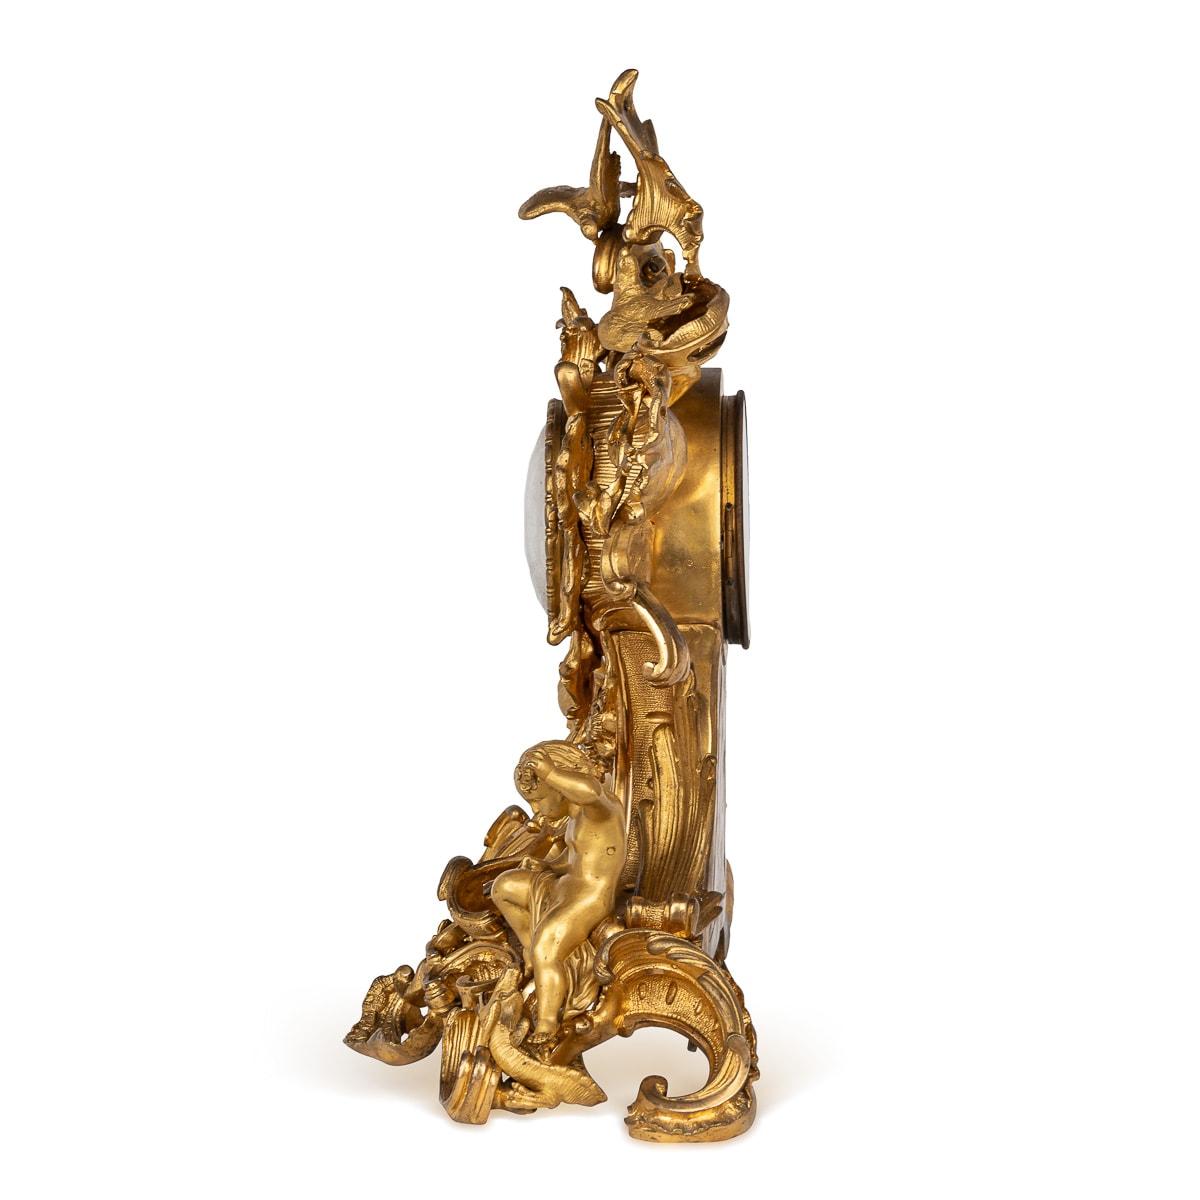 Antiquités Pendule de cheminée en bronze doré de style rococo français du 19e siècle, réalisée par Raingo Frères. L'horloge est ornée d'une décoration complexe, avec des oiseaux reposant sur un feuillage floral qui orne son environnement. La colonne